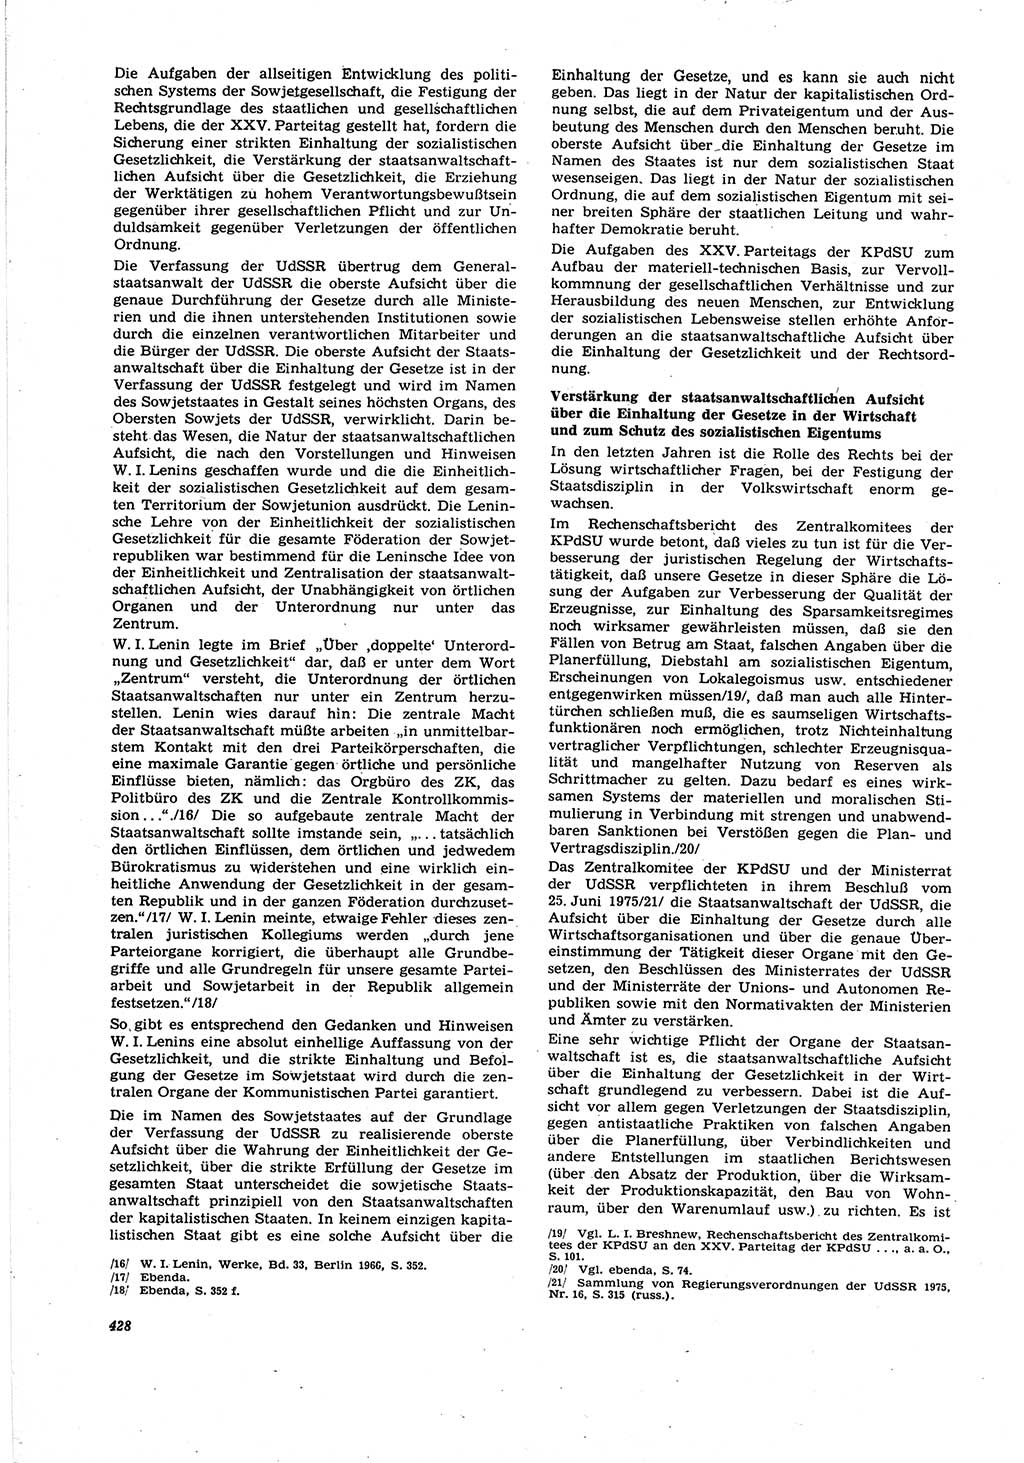 Neue Justiz (NJ), Zeitschrift für Recht und Rechtswissenschaft [Deutsche Demokratische Republik (DDR)], 30. Jahrgang 1976, Seite 428 (NJ DDR 1976, S. 428)